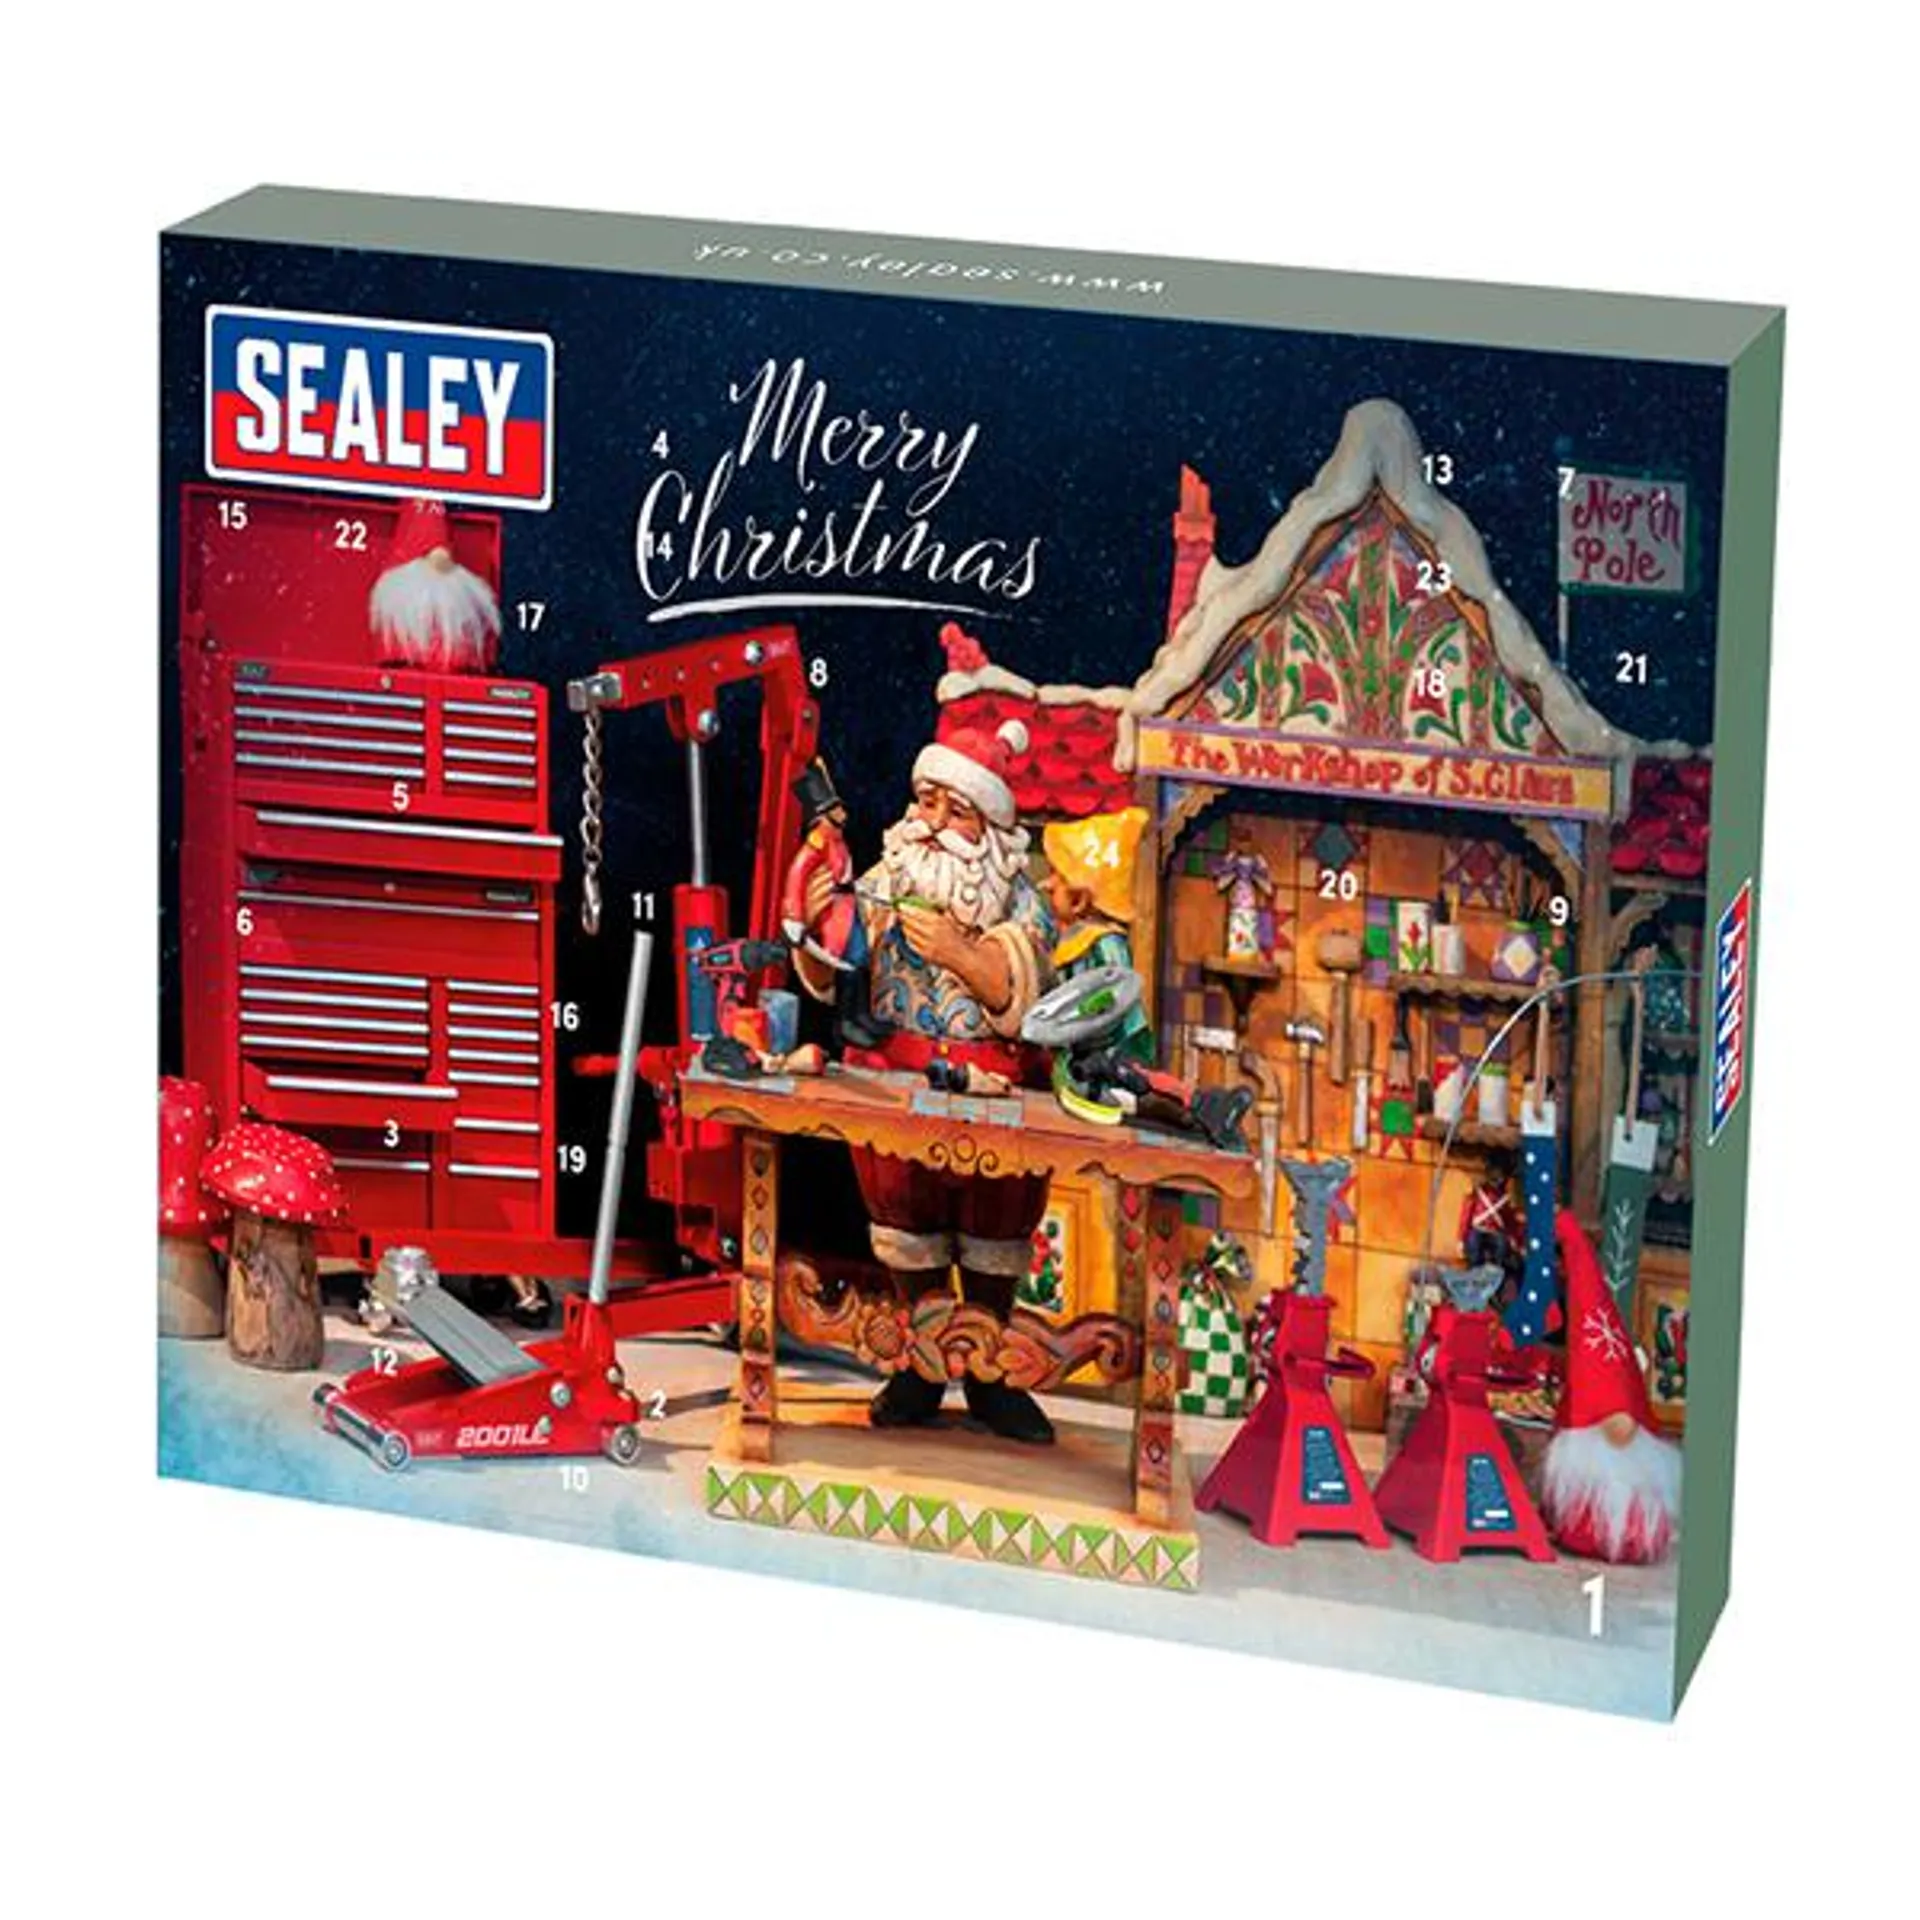 Sealey 35pc Ratchet, Socket & Bit Set Advent Calendar